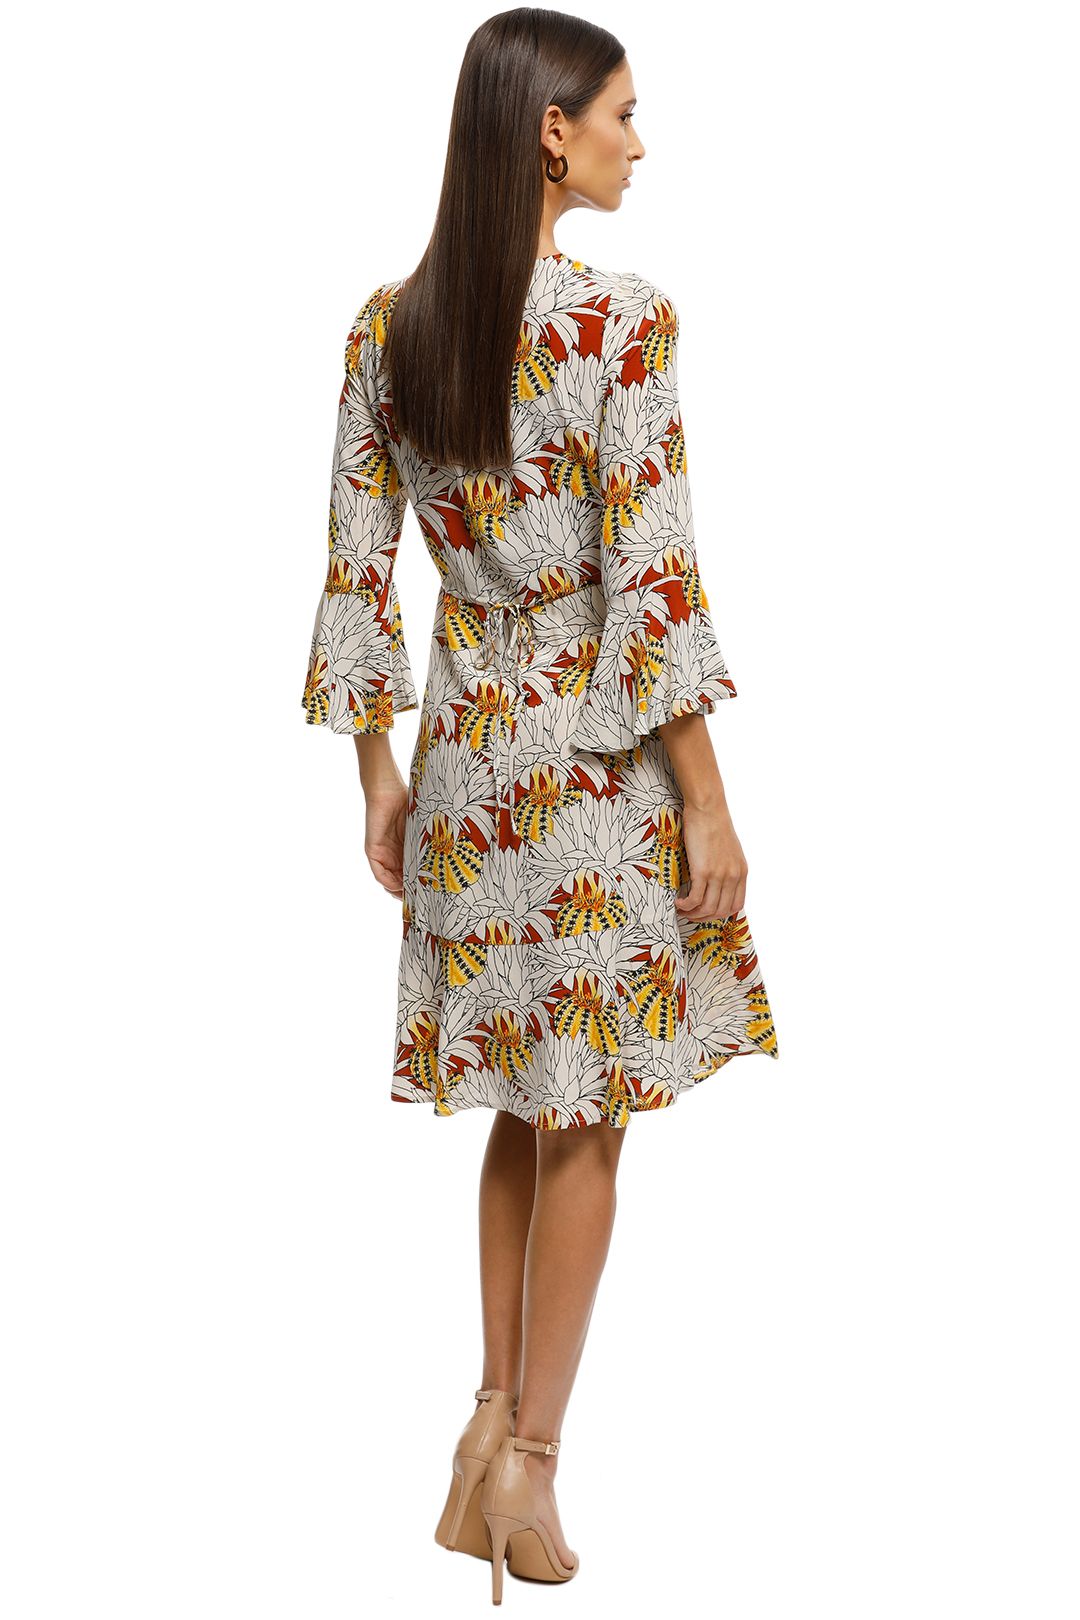 Gorman - Pumpkin Flower Silk Dress - Print - Back